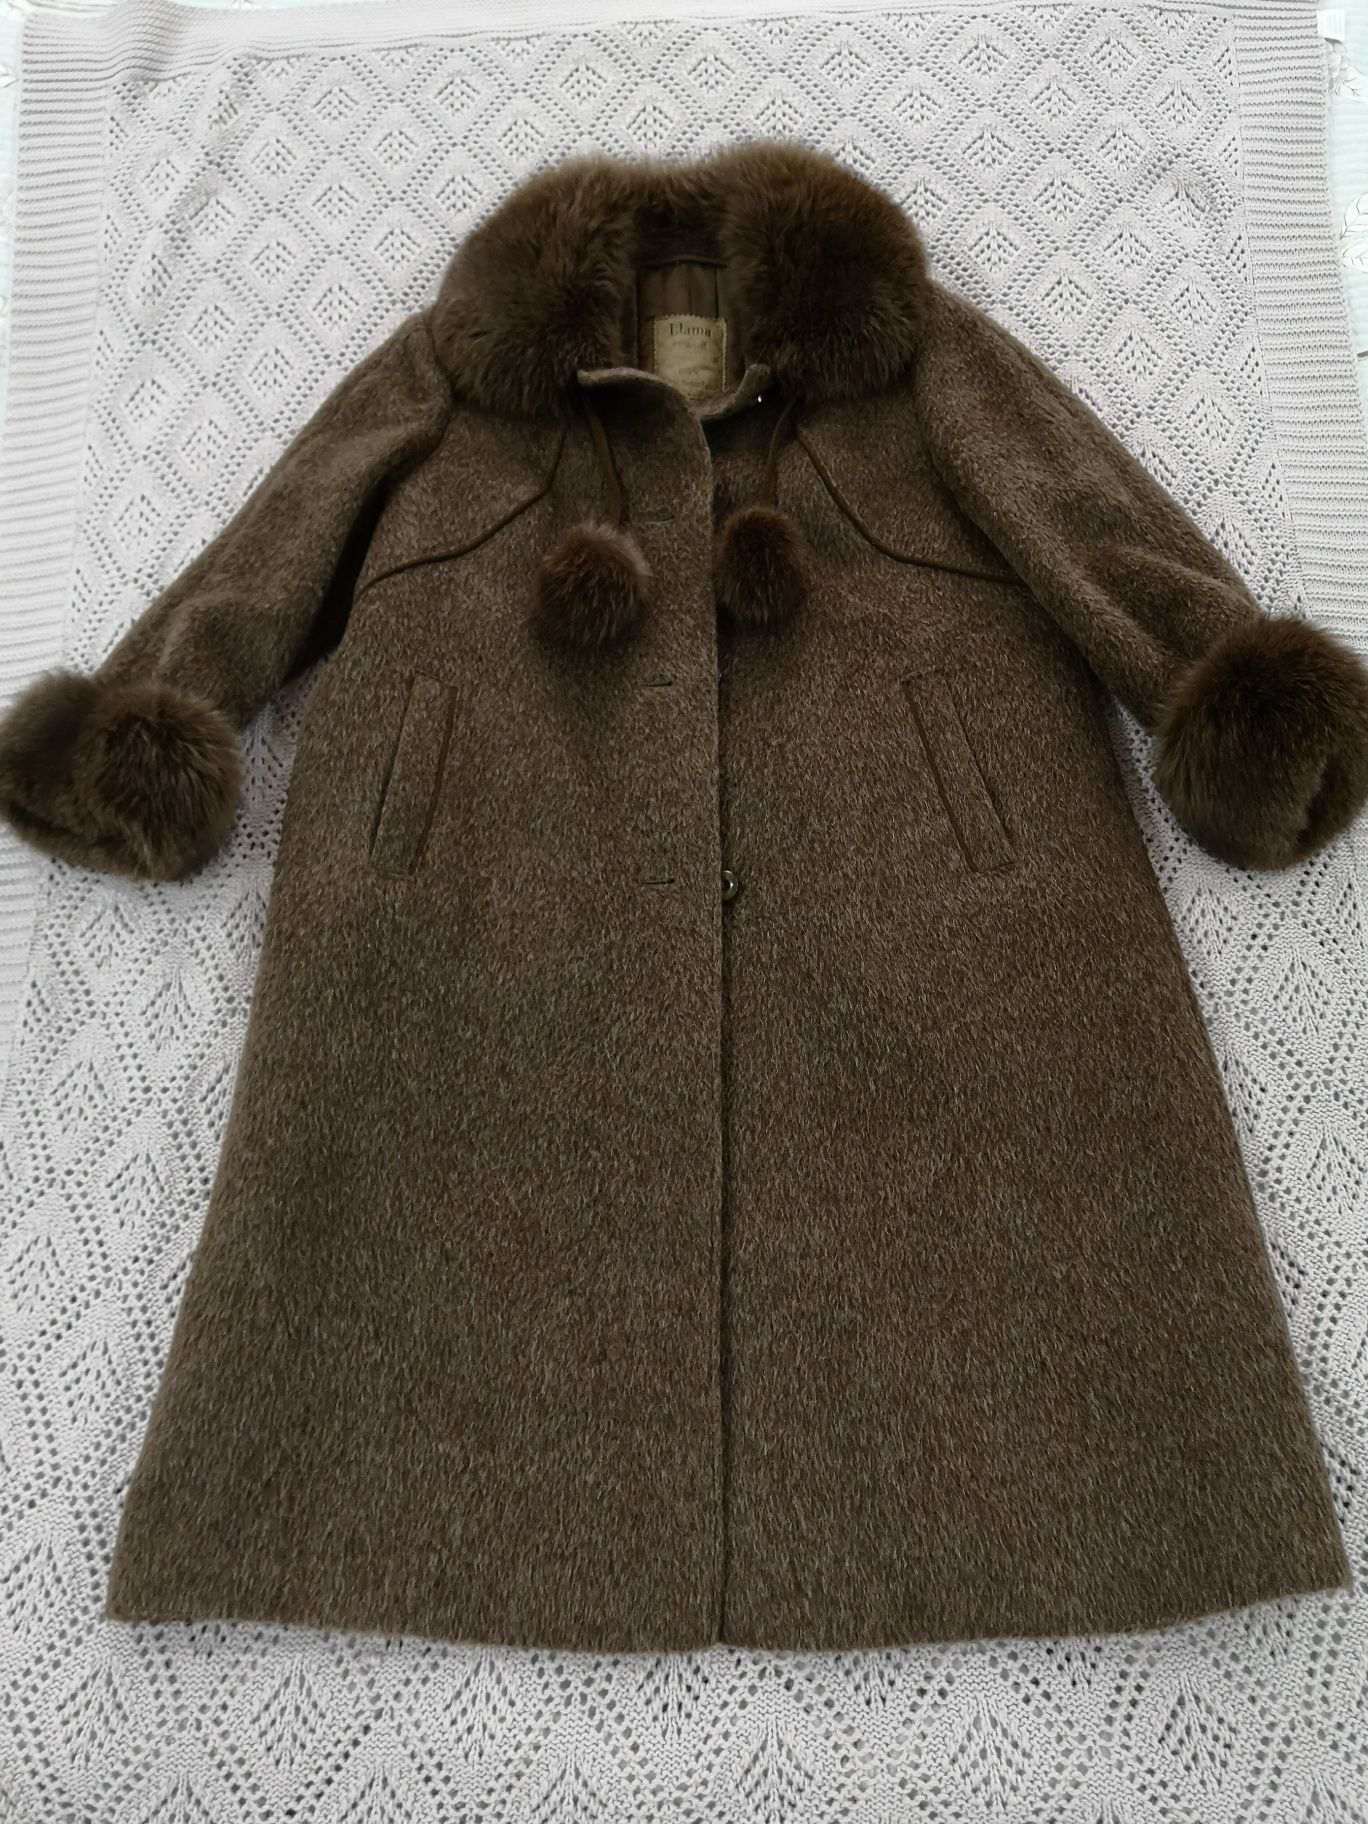 Пальто женское шерстяное с отделкой из ламы. Размер M-L